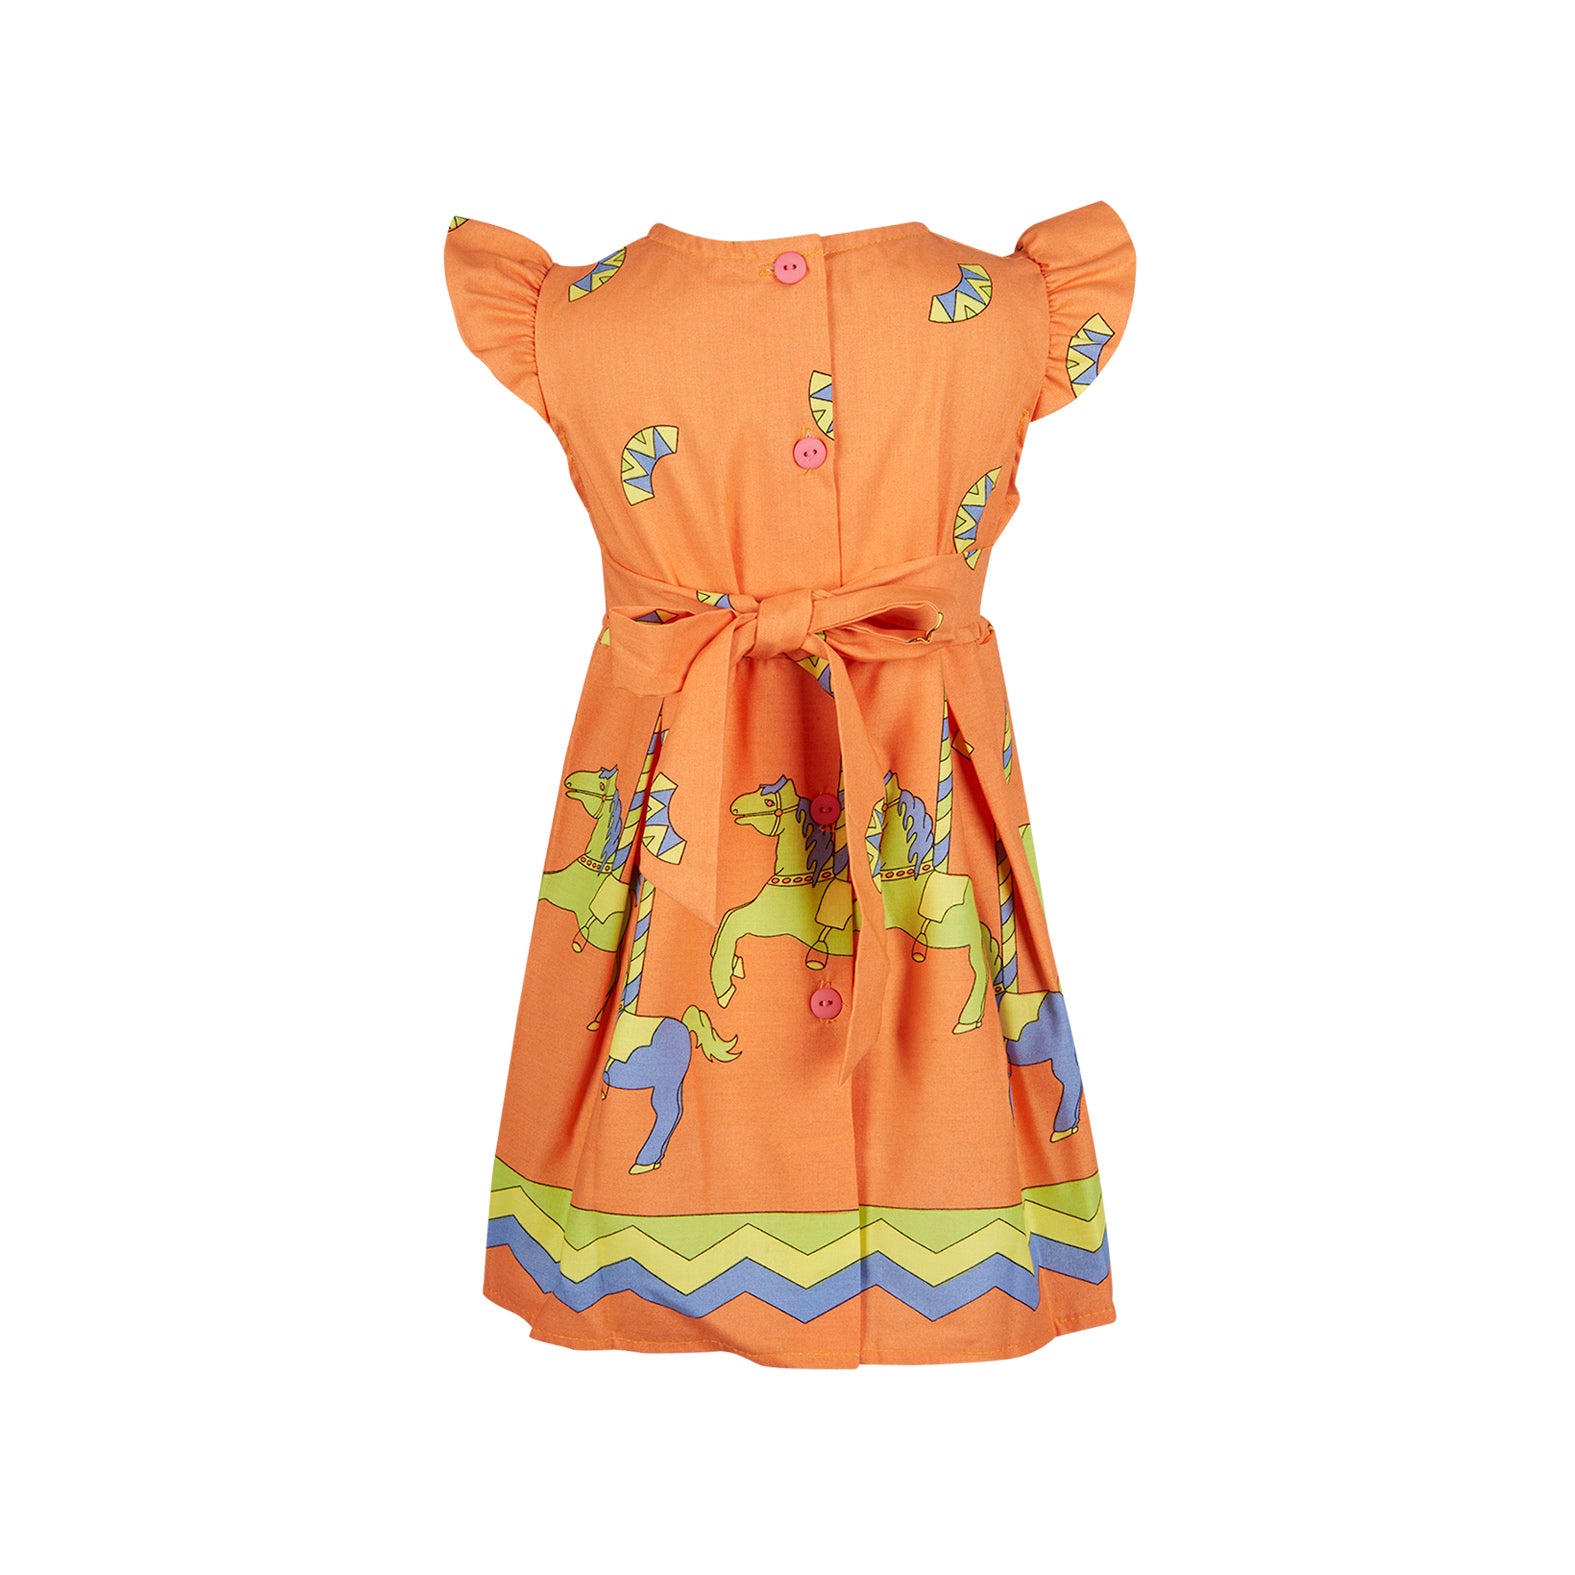 Archive Poppy - Lizzie Dress - Orange Carosel